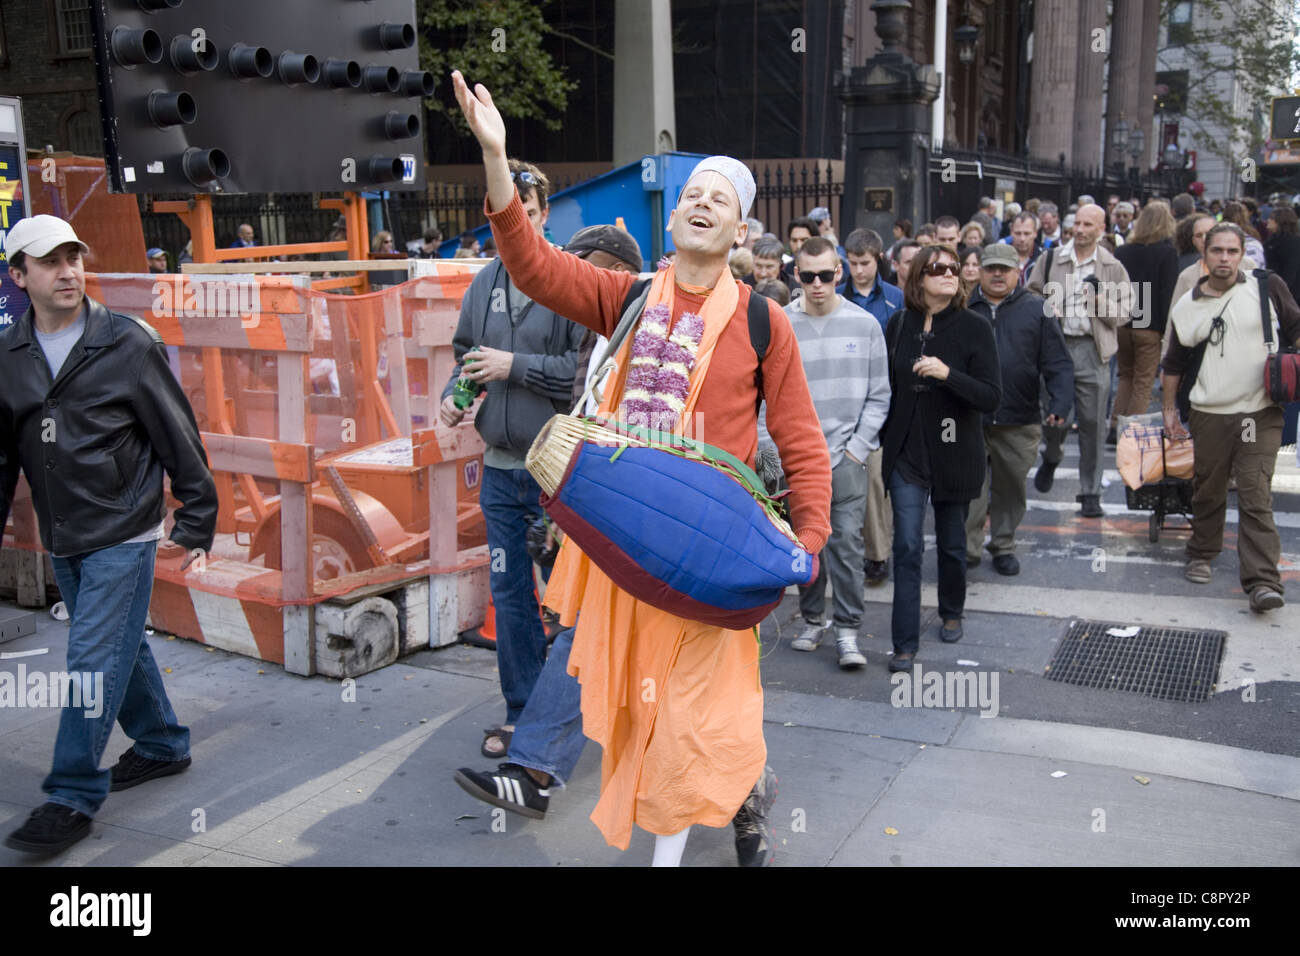 Freudige Hari Krishna-Anhänger geht und spielt seine Trommel am Broadway im Bankenviertel in New York City Stockfoto